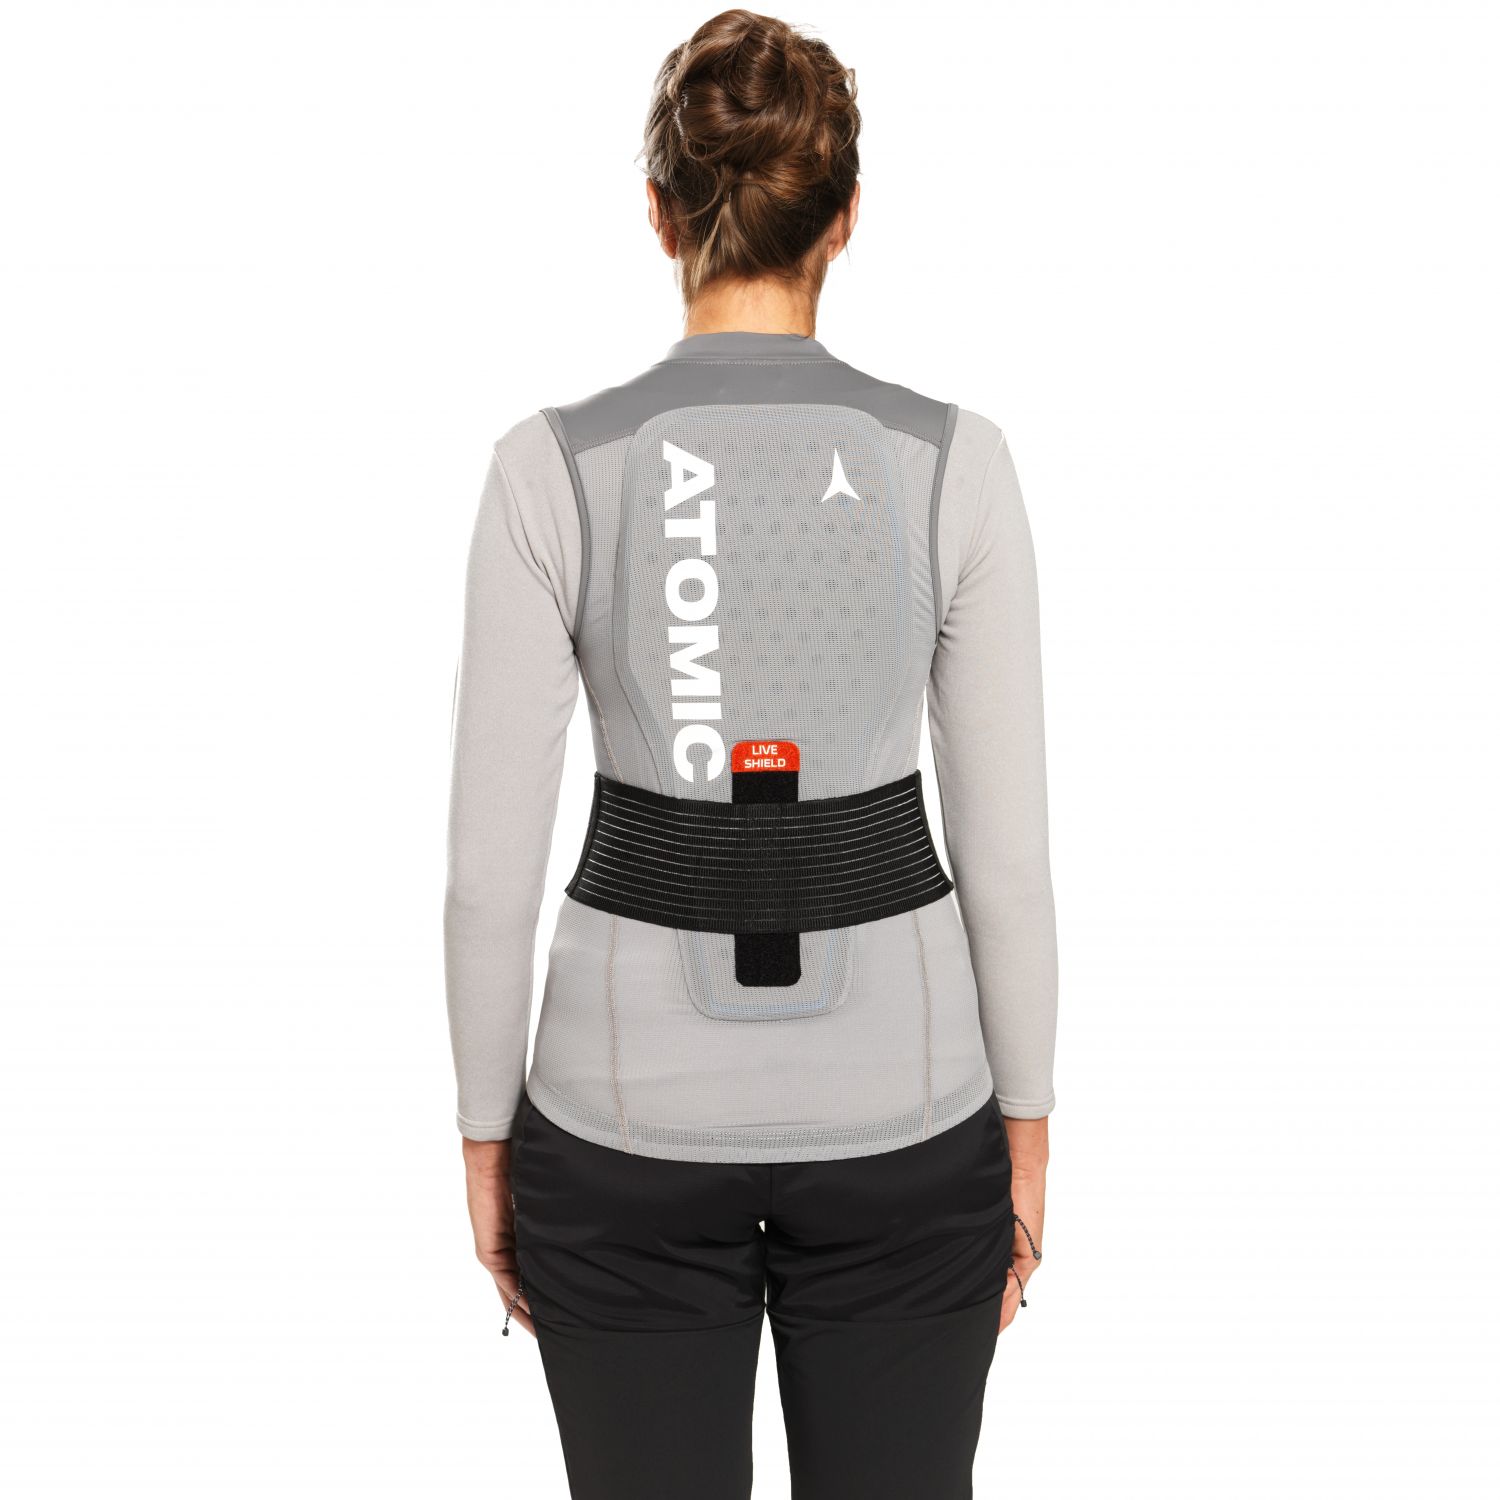 Atomic Live Shield Vest, selkäsuoja, nainen, harmaa